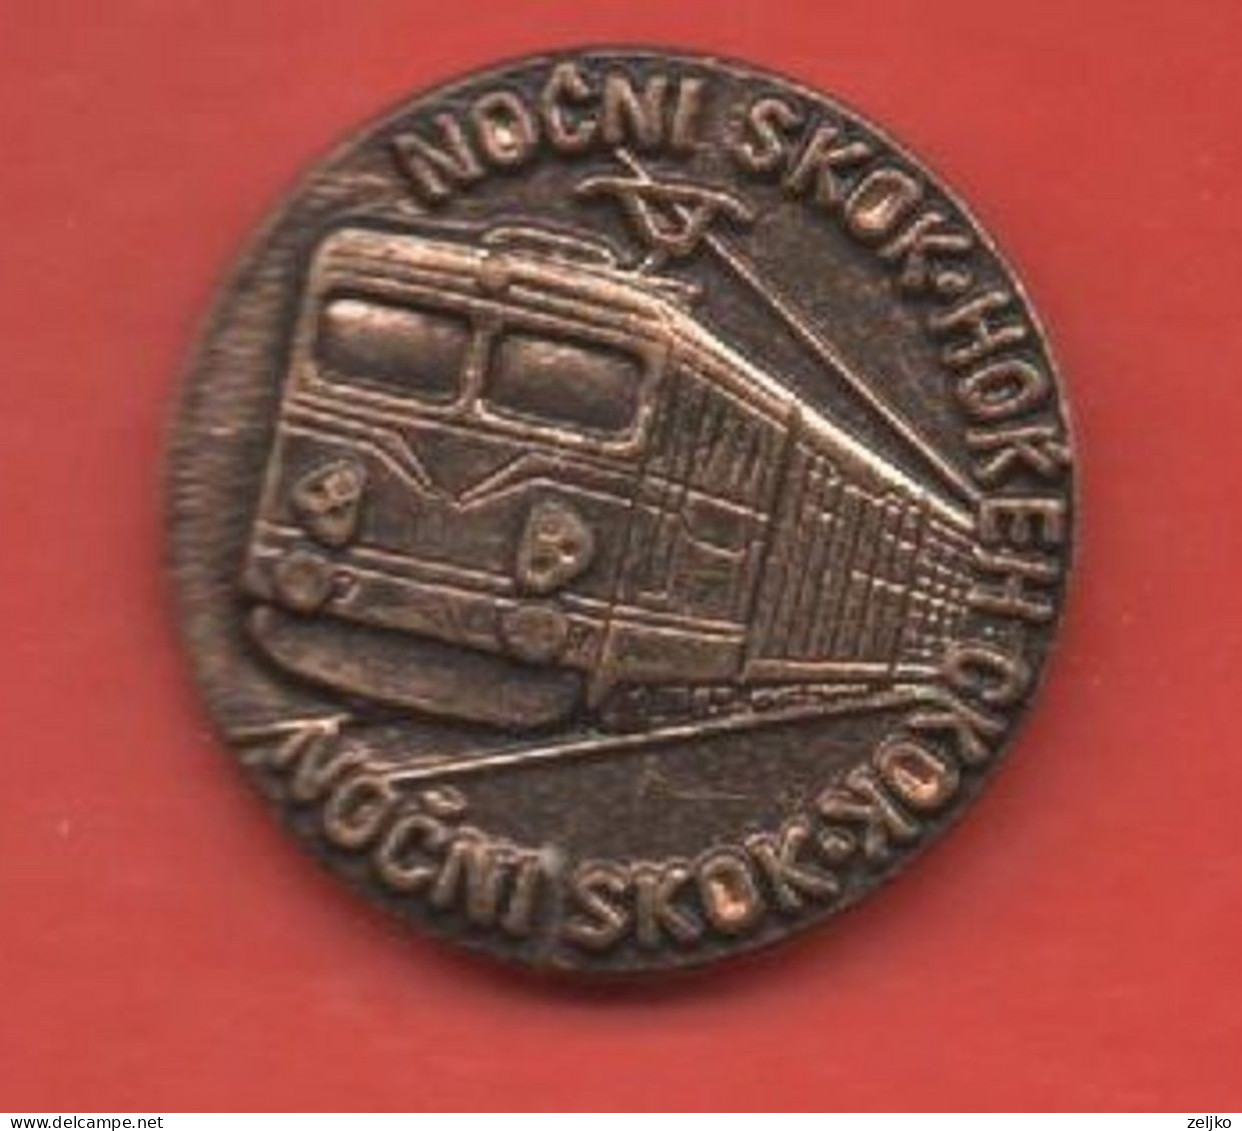 Yugoslavia, Railways, Nocni Skok - Night Jump, Train - Transports